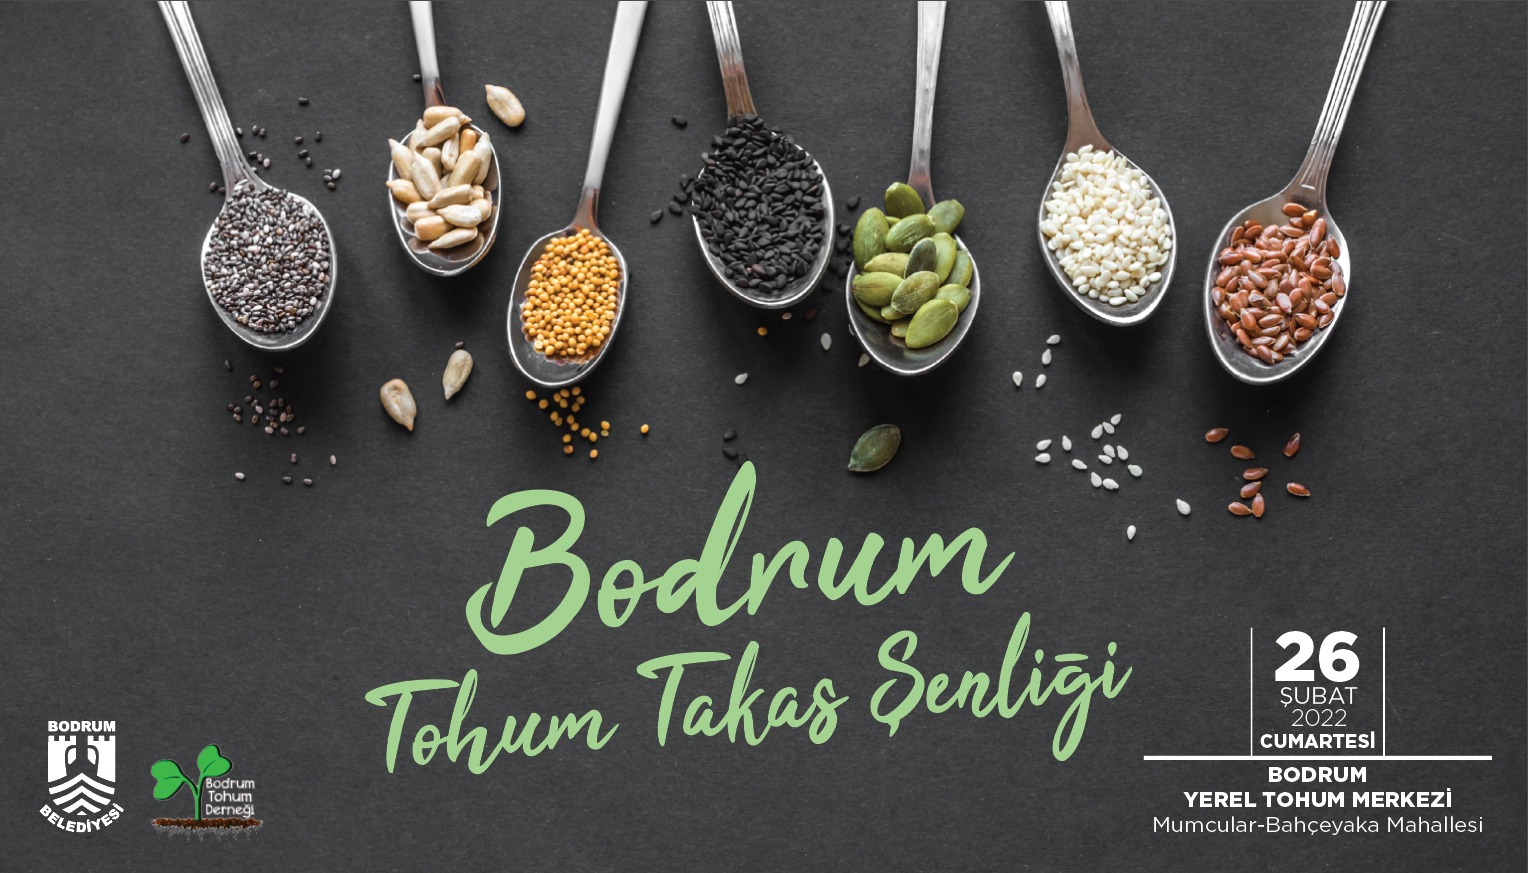 Bodrum Belediyesi "Bodrum Tohum Takas Şenliği" düzenleniyor